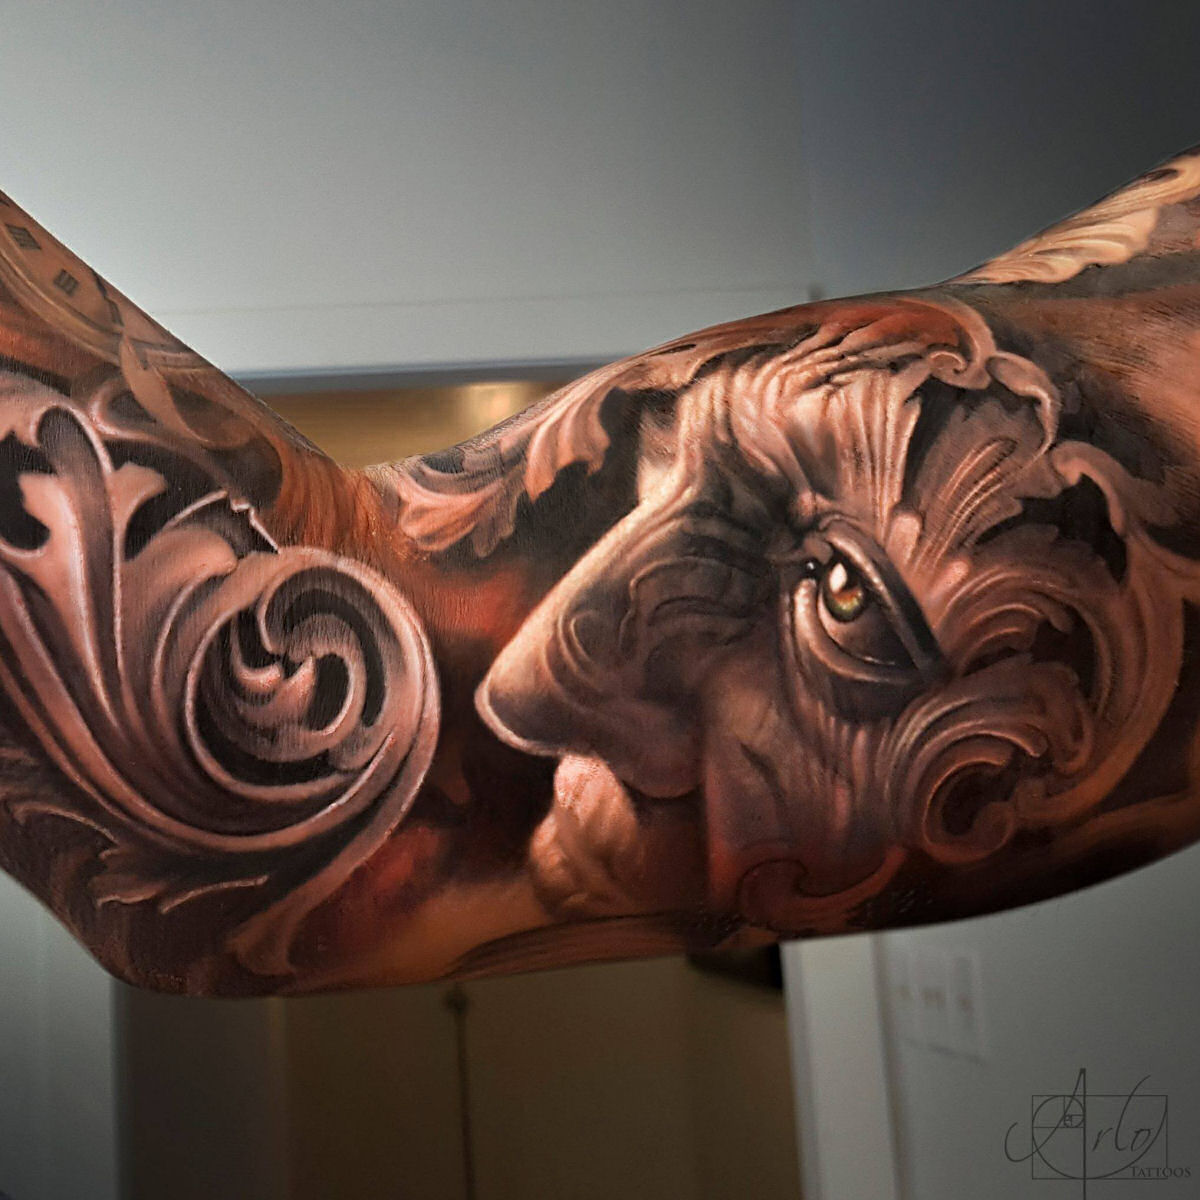 Artista cria tatuagens 3D surreais com profundidade e definição incríveis 01